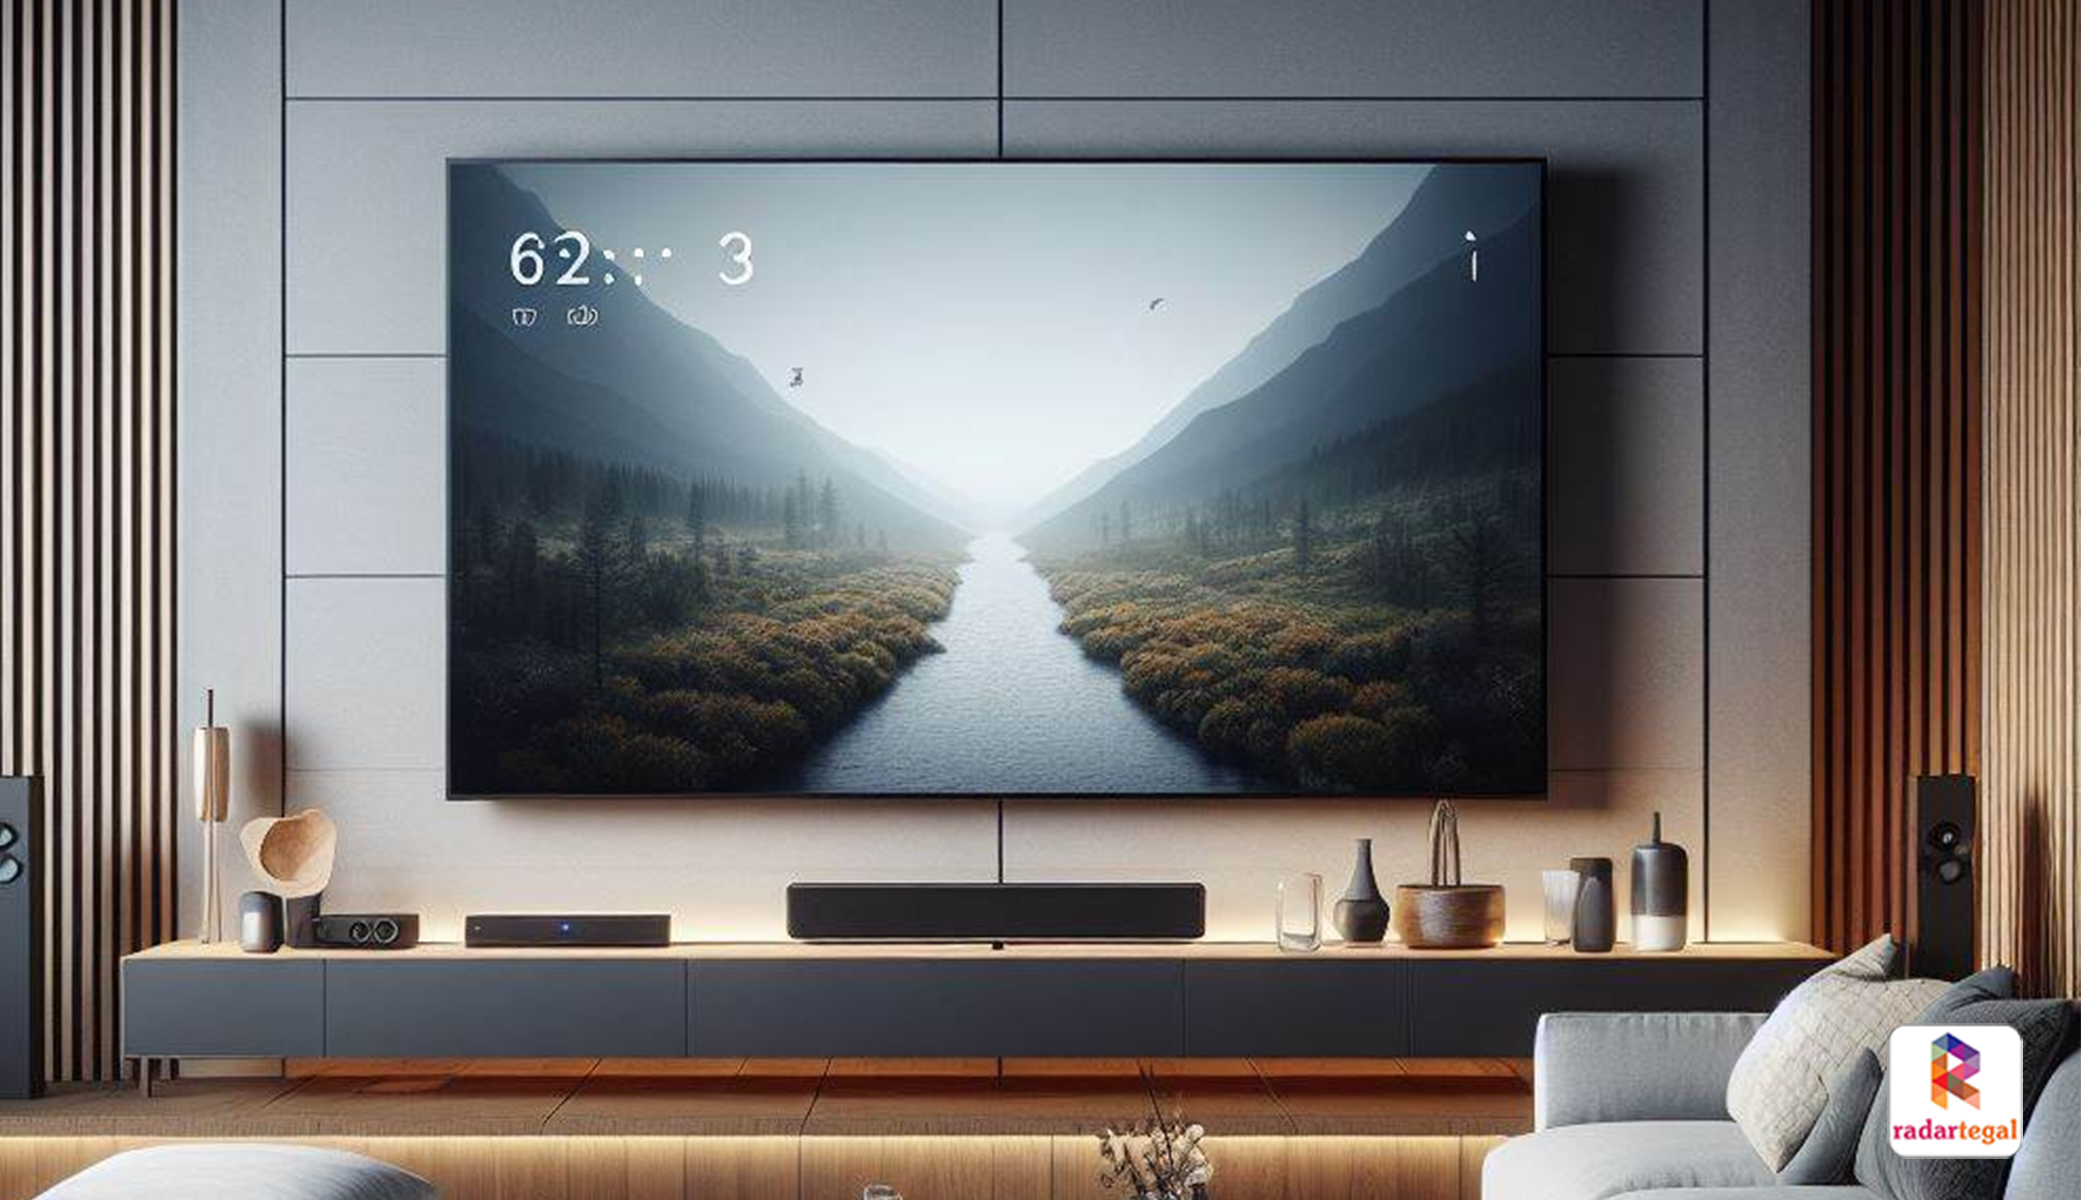 Bikin Samsung Ketar Ketir, TV TCL 32 Inch Terbaru Punya Keunggulan Seperti Ini